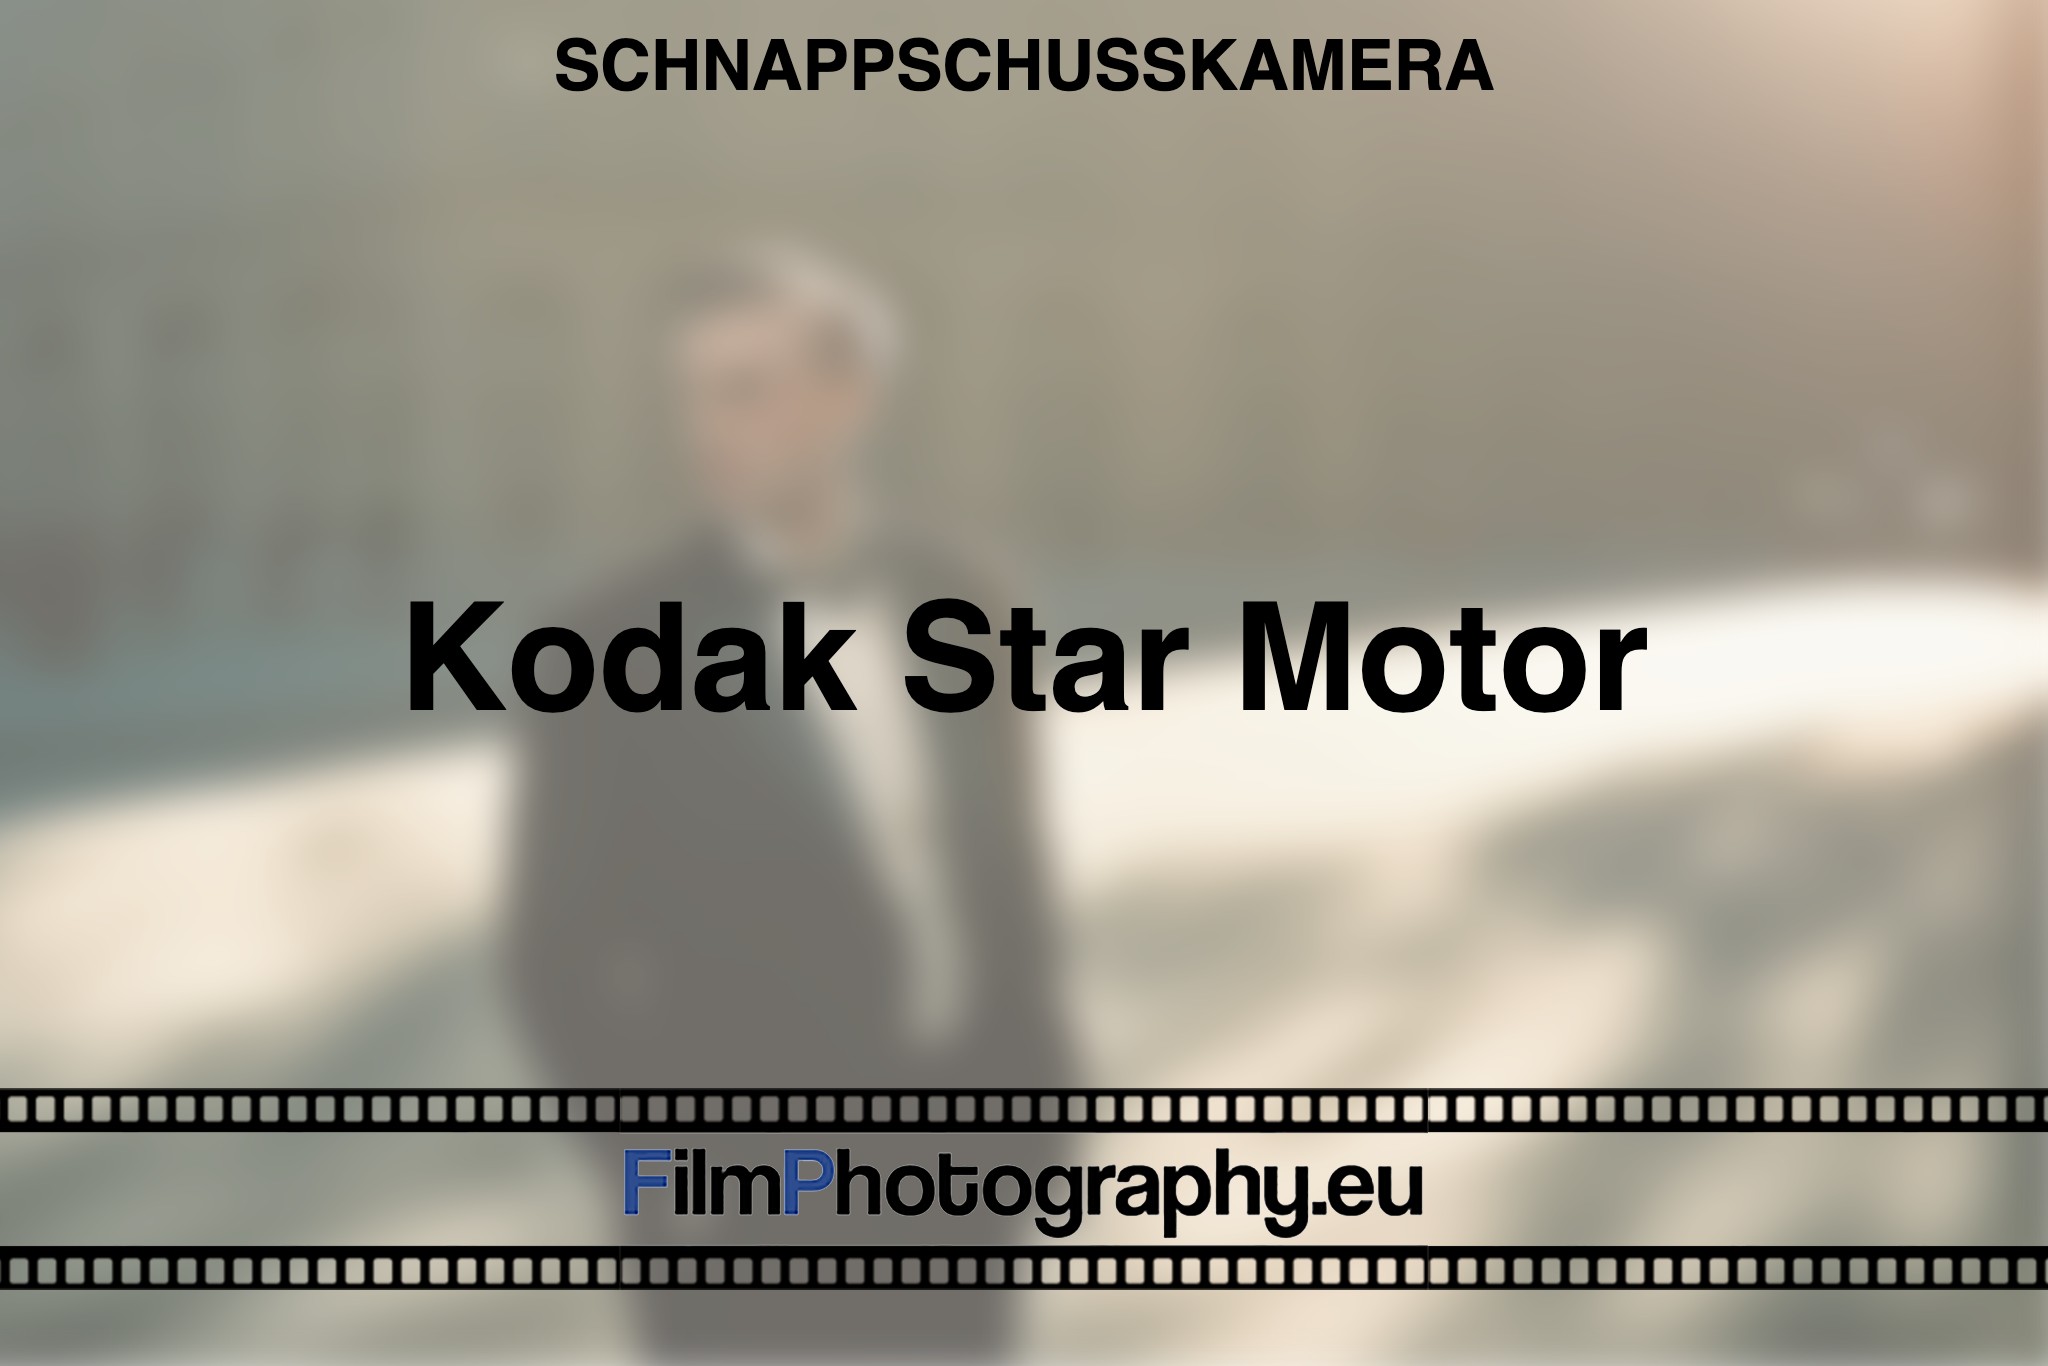 kodak-star-motor-schnappschusskamera-bnv